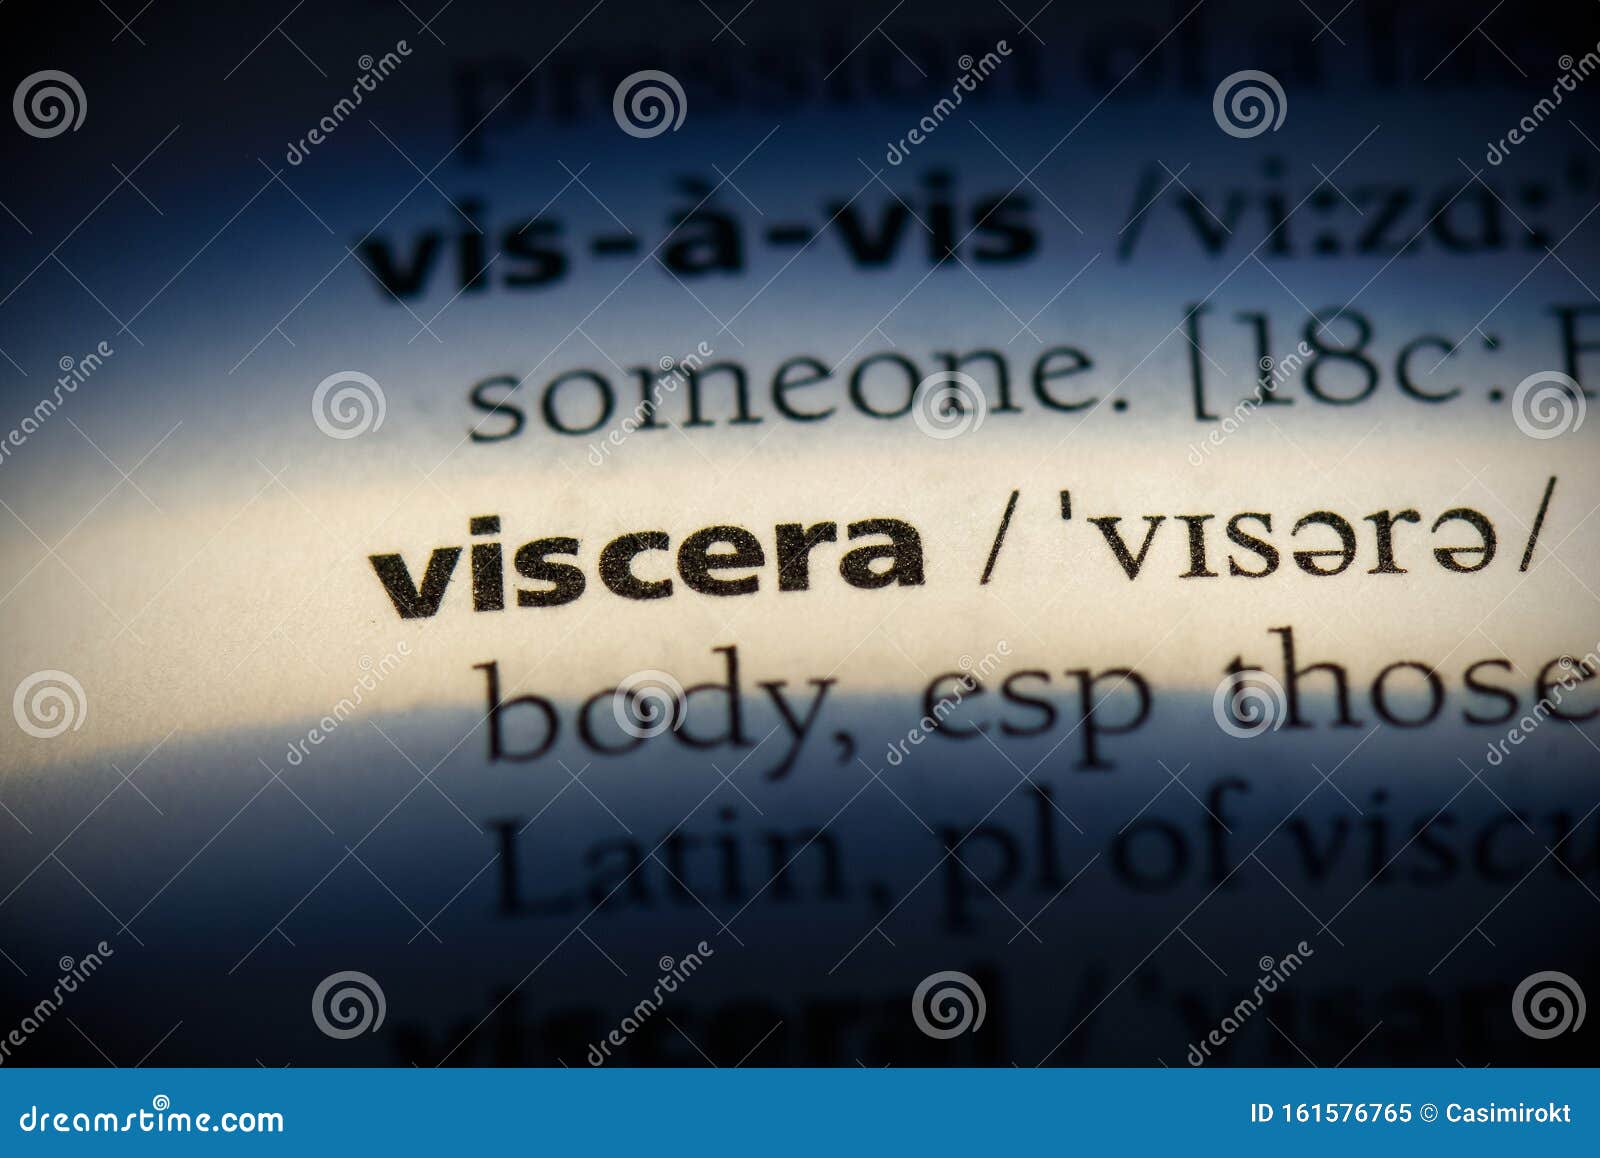 viscera